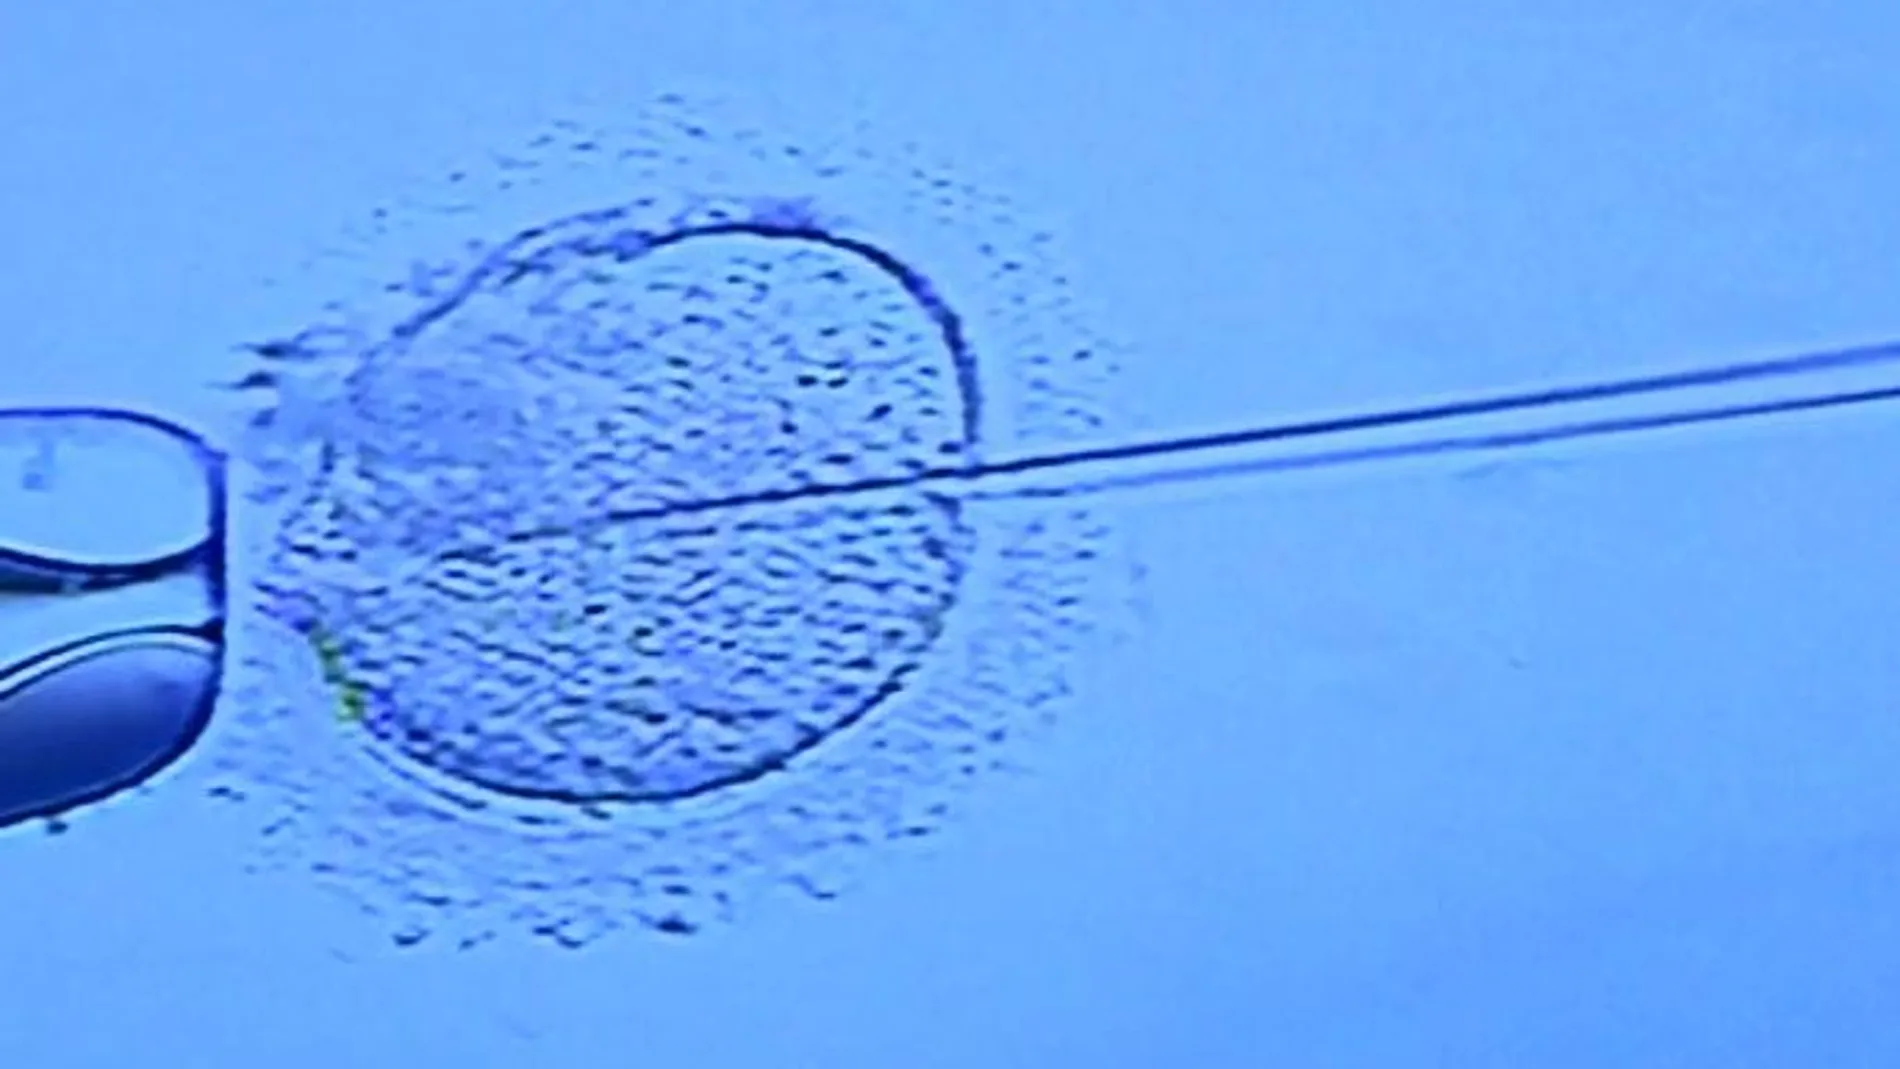 Transferir un único embrión, el reto para evitar los arriesgados embarazos múltiples